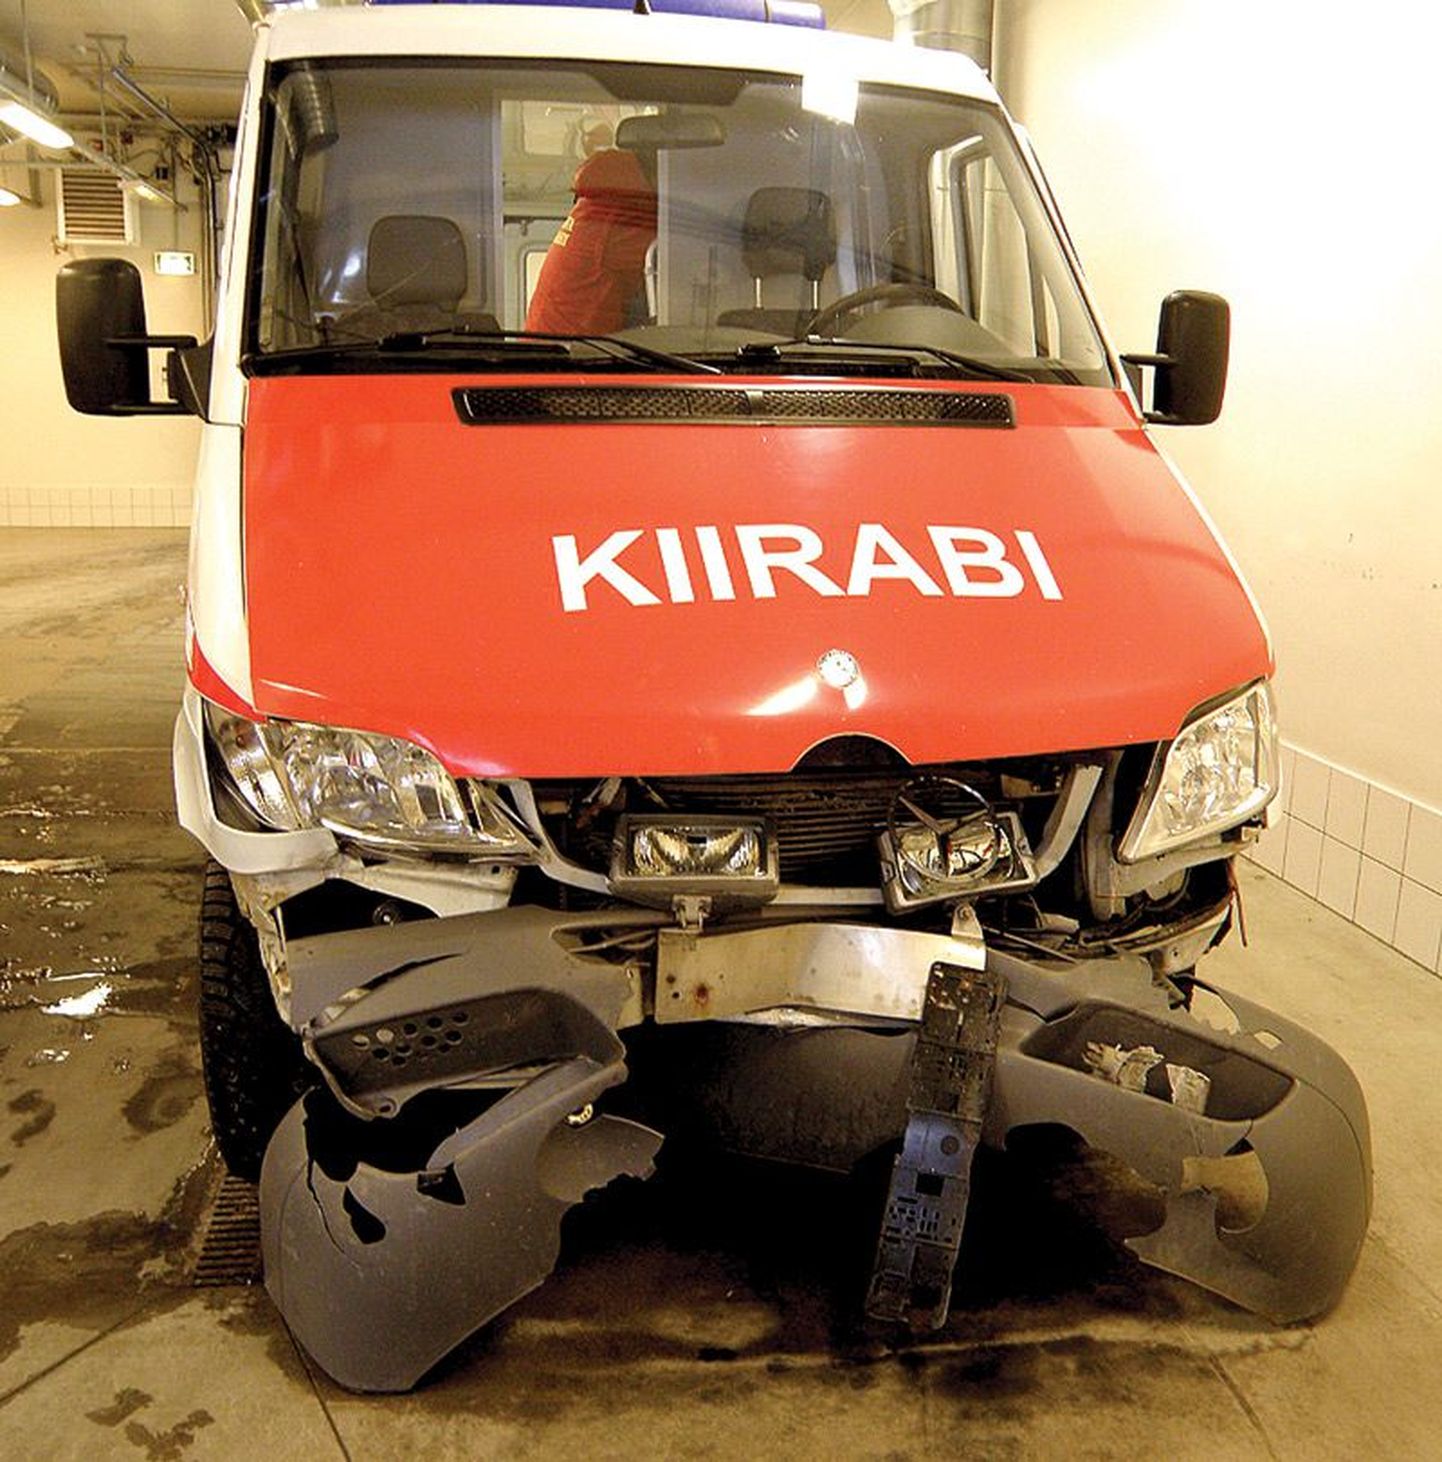 Jõgevalt Tartu haiglasse patsienti toimetanud kiirabiauto sattus kahte järjestikusesse avariisse.